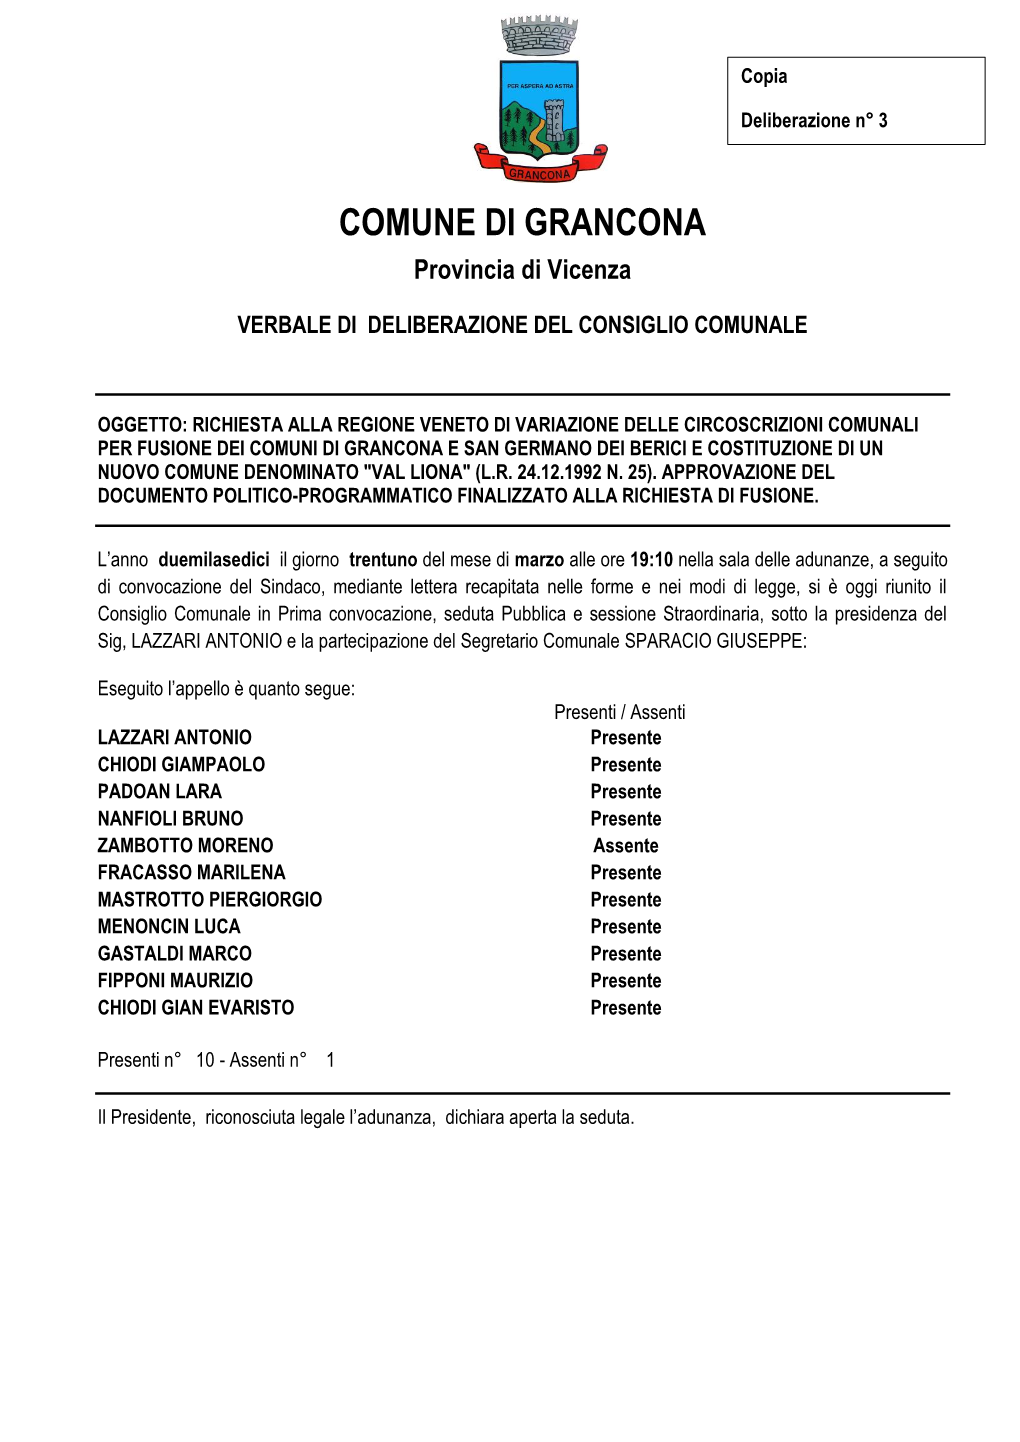 COMUNE DI GRANCONA Provincia Di Vicenza